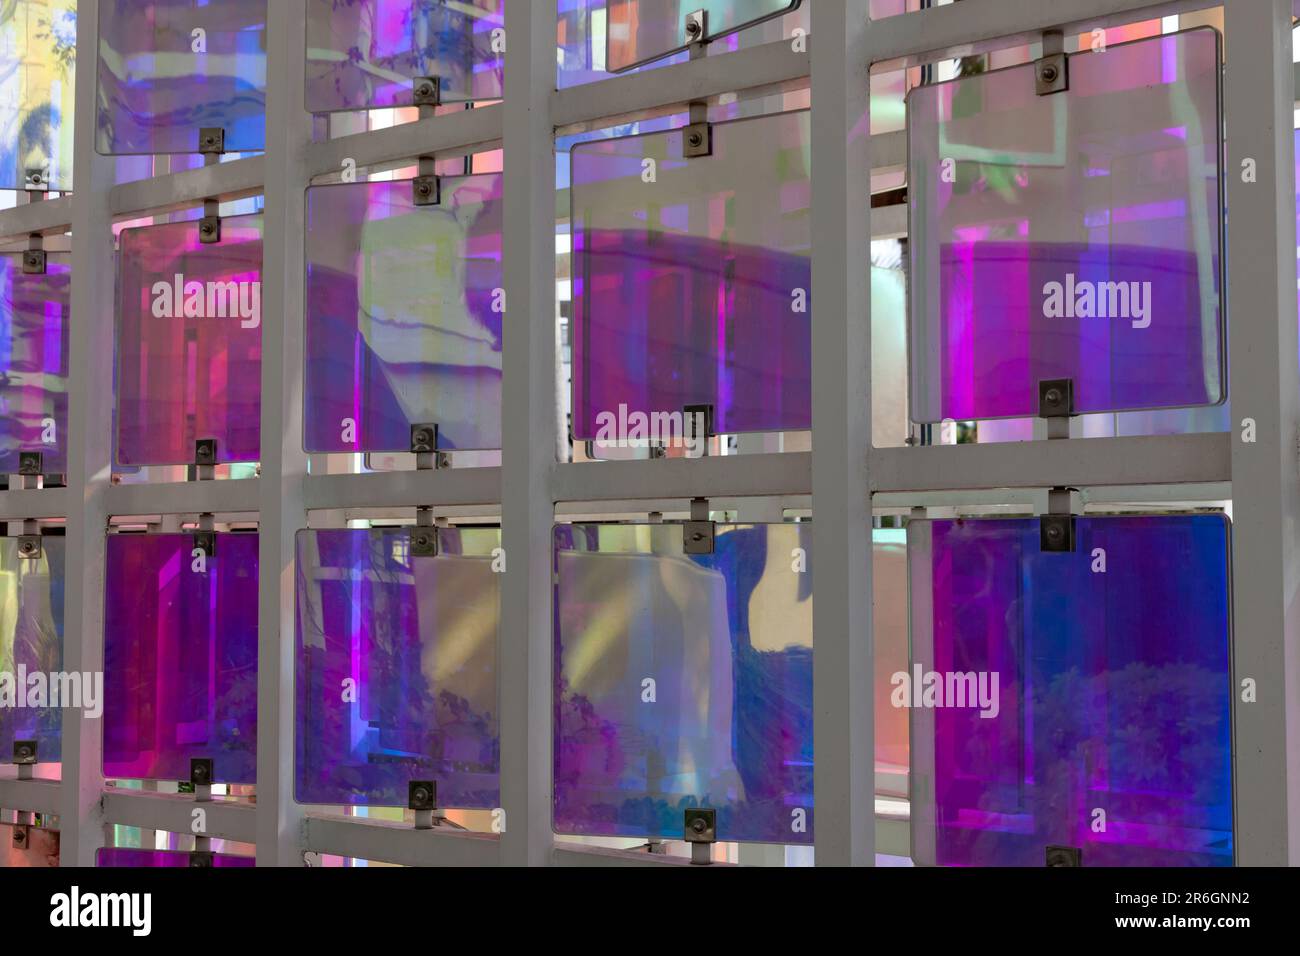 Gros plan d'une installation d'art public composée de panneaux revêtus de dichroïque qui pivotent, changent de couleur et réfléchissent au fur et à mesure de leur déplacement. Banque D'Images